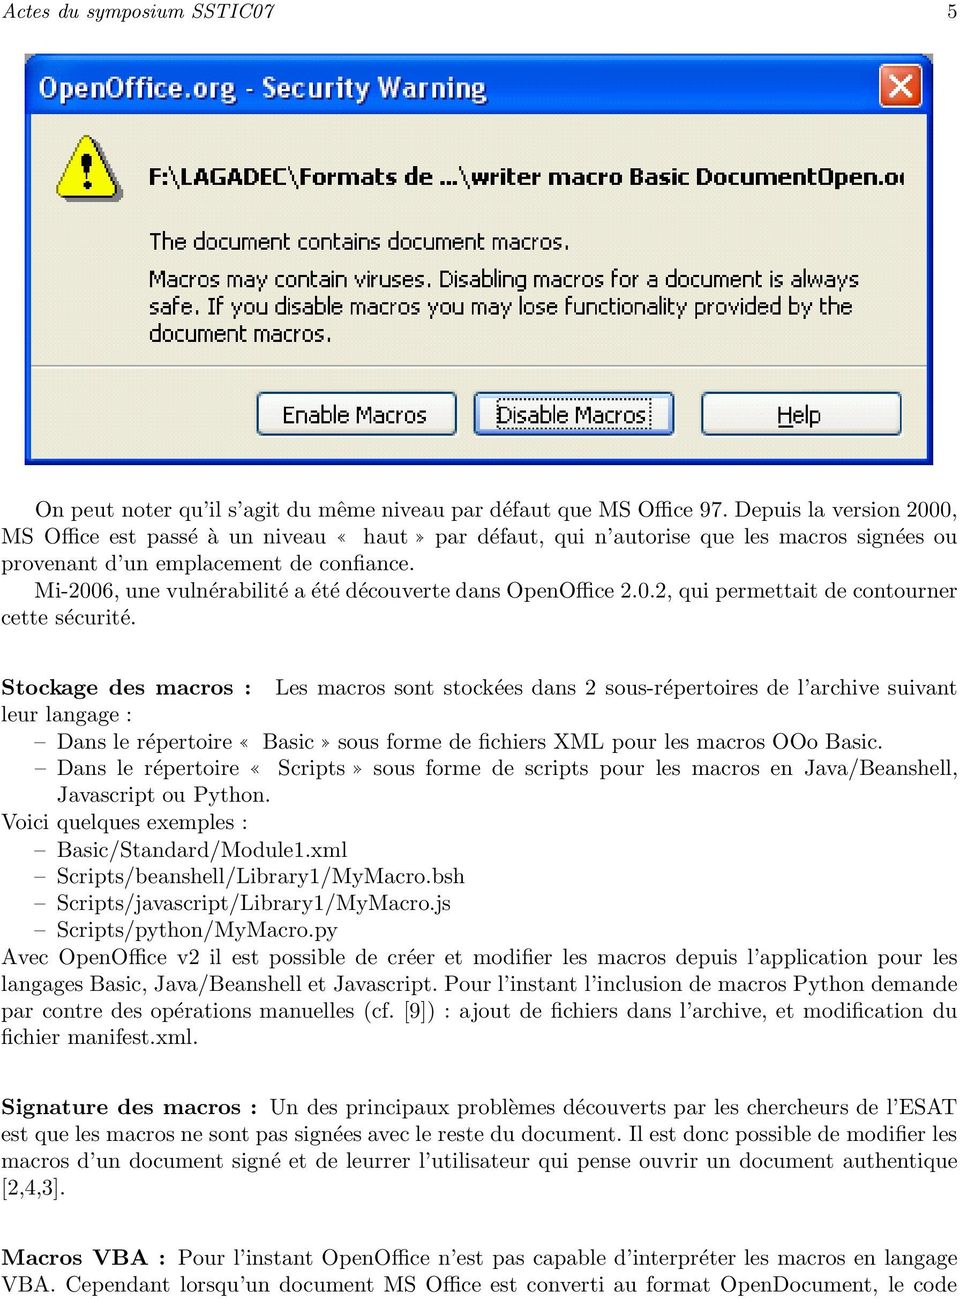 Mi-2006, une vulnérabilité a été découverte dans OpenOffice 2.0.2, qui permettait de contourner cette sécurité.